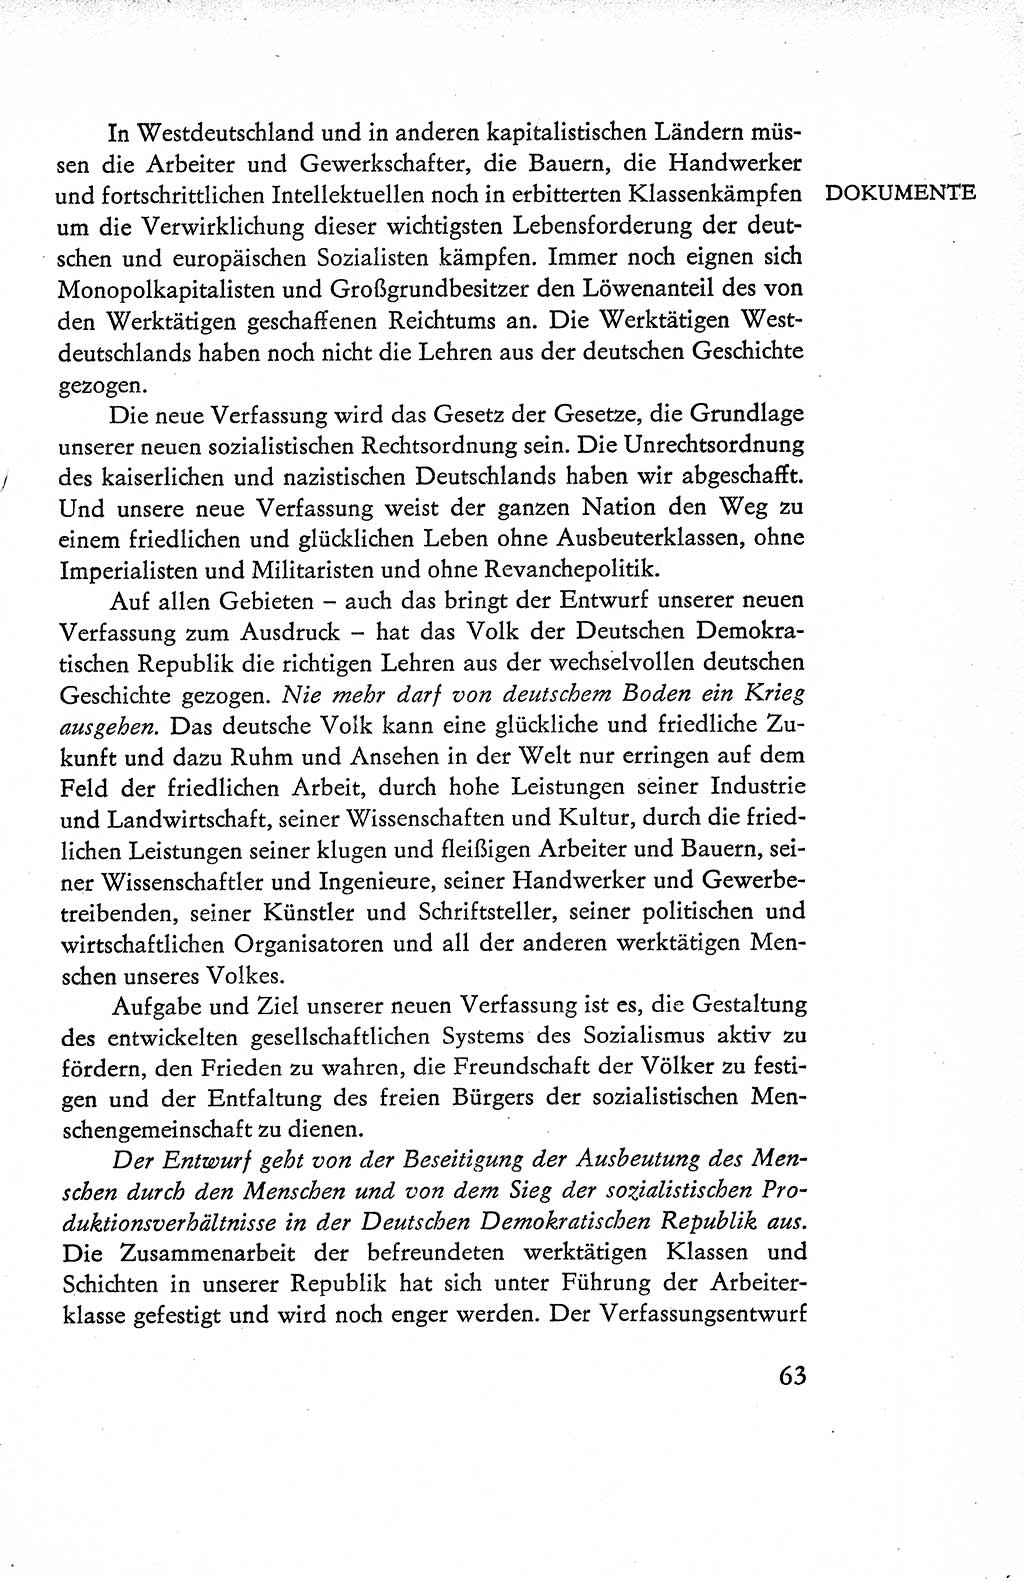 Verfassung der Deutschen Demokratischen Republik (DDR), Dokumente, Kommentar 1969, Band 1, Seite 63 (Verf. DDR Dok. Komm. 1969, Bd. 1, S. 63)